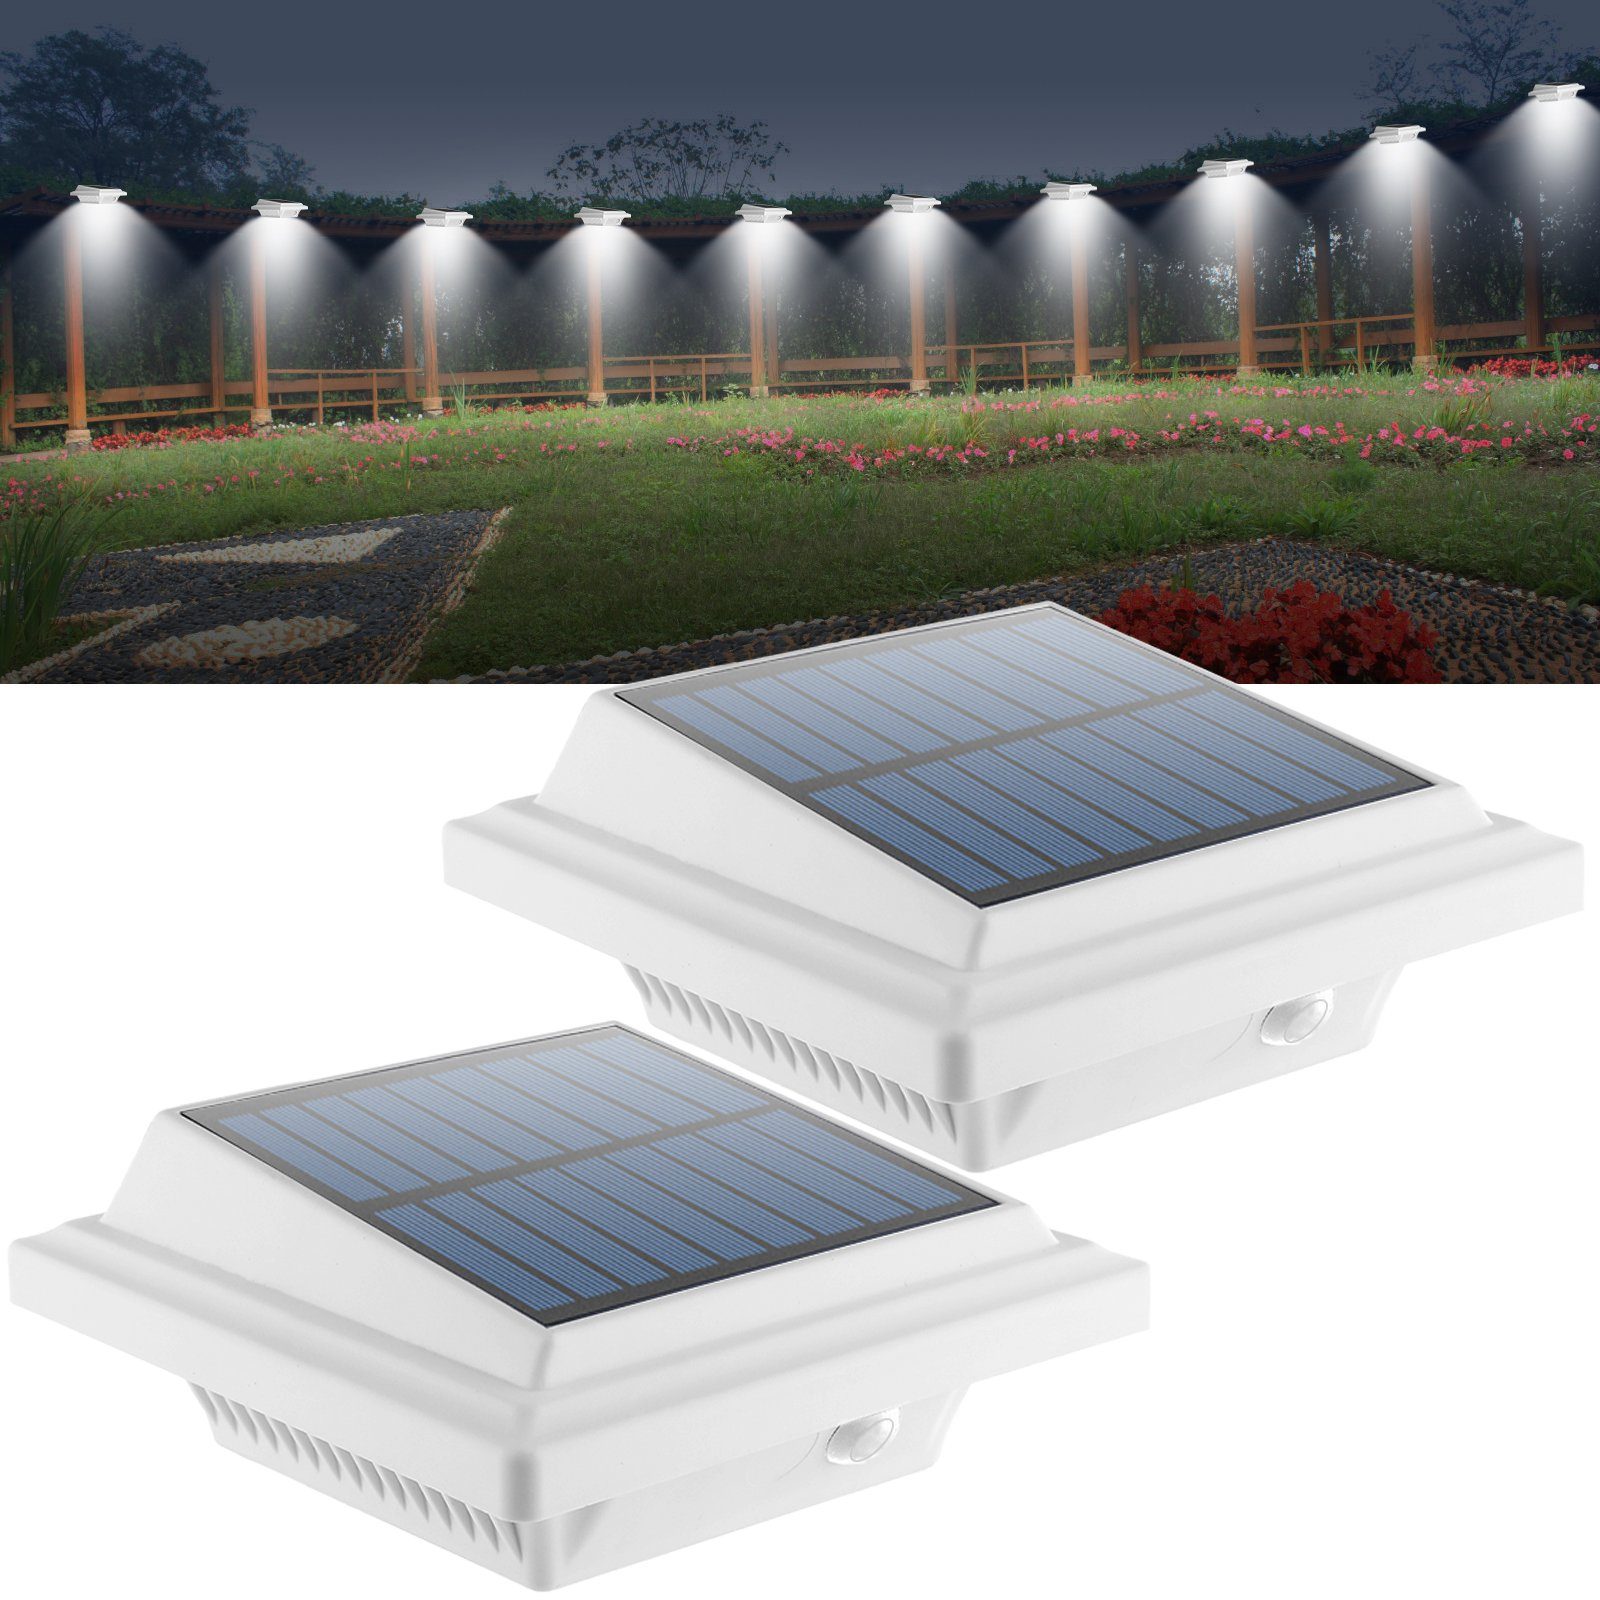 12LEDs Solarlampe mit Bewegungsmelder Dachrinnen Wand Strahler Sicherheit Licht 